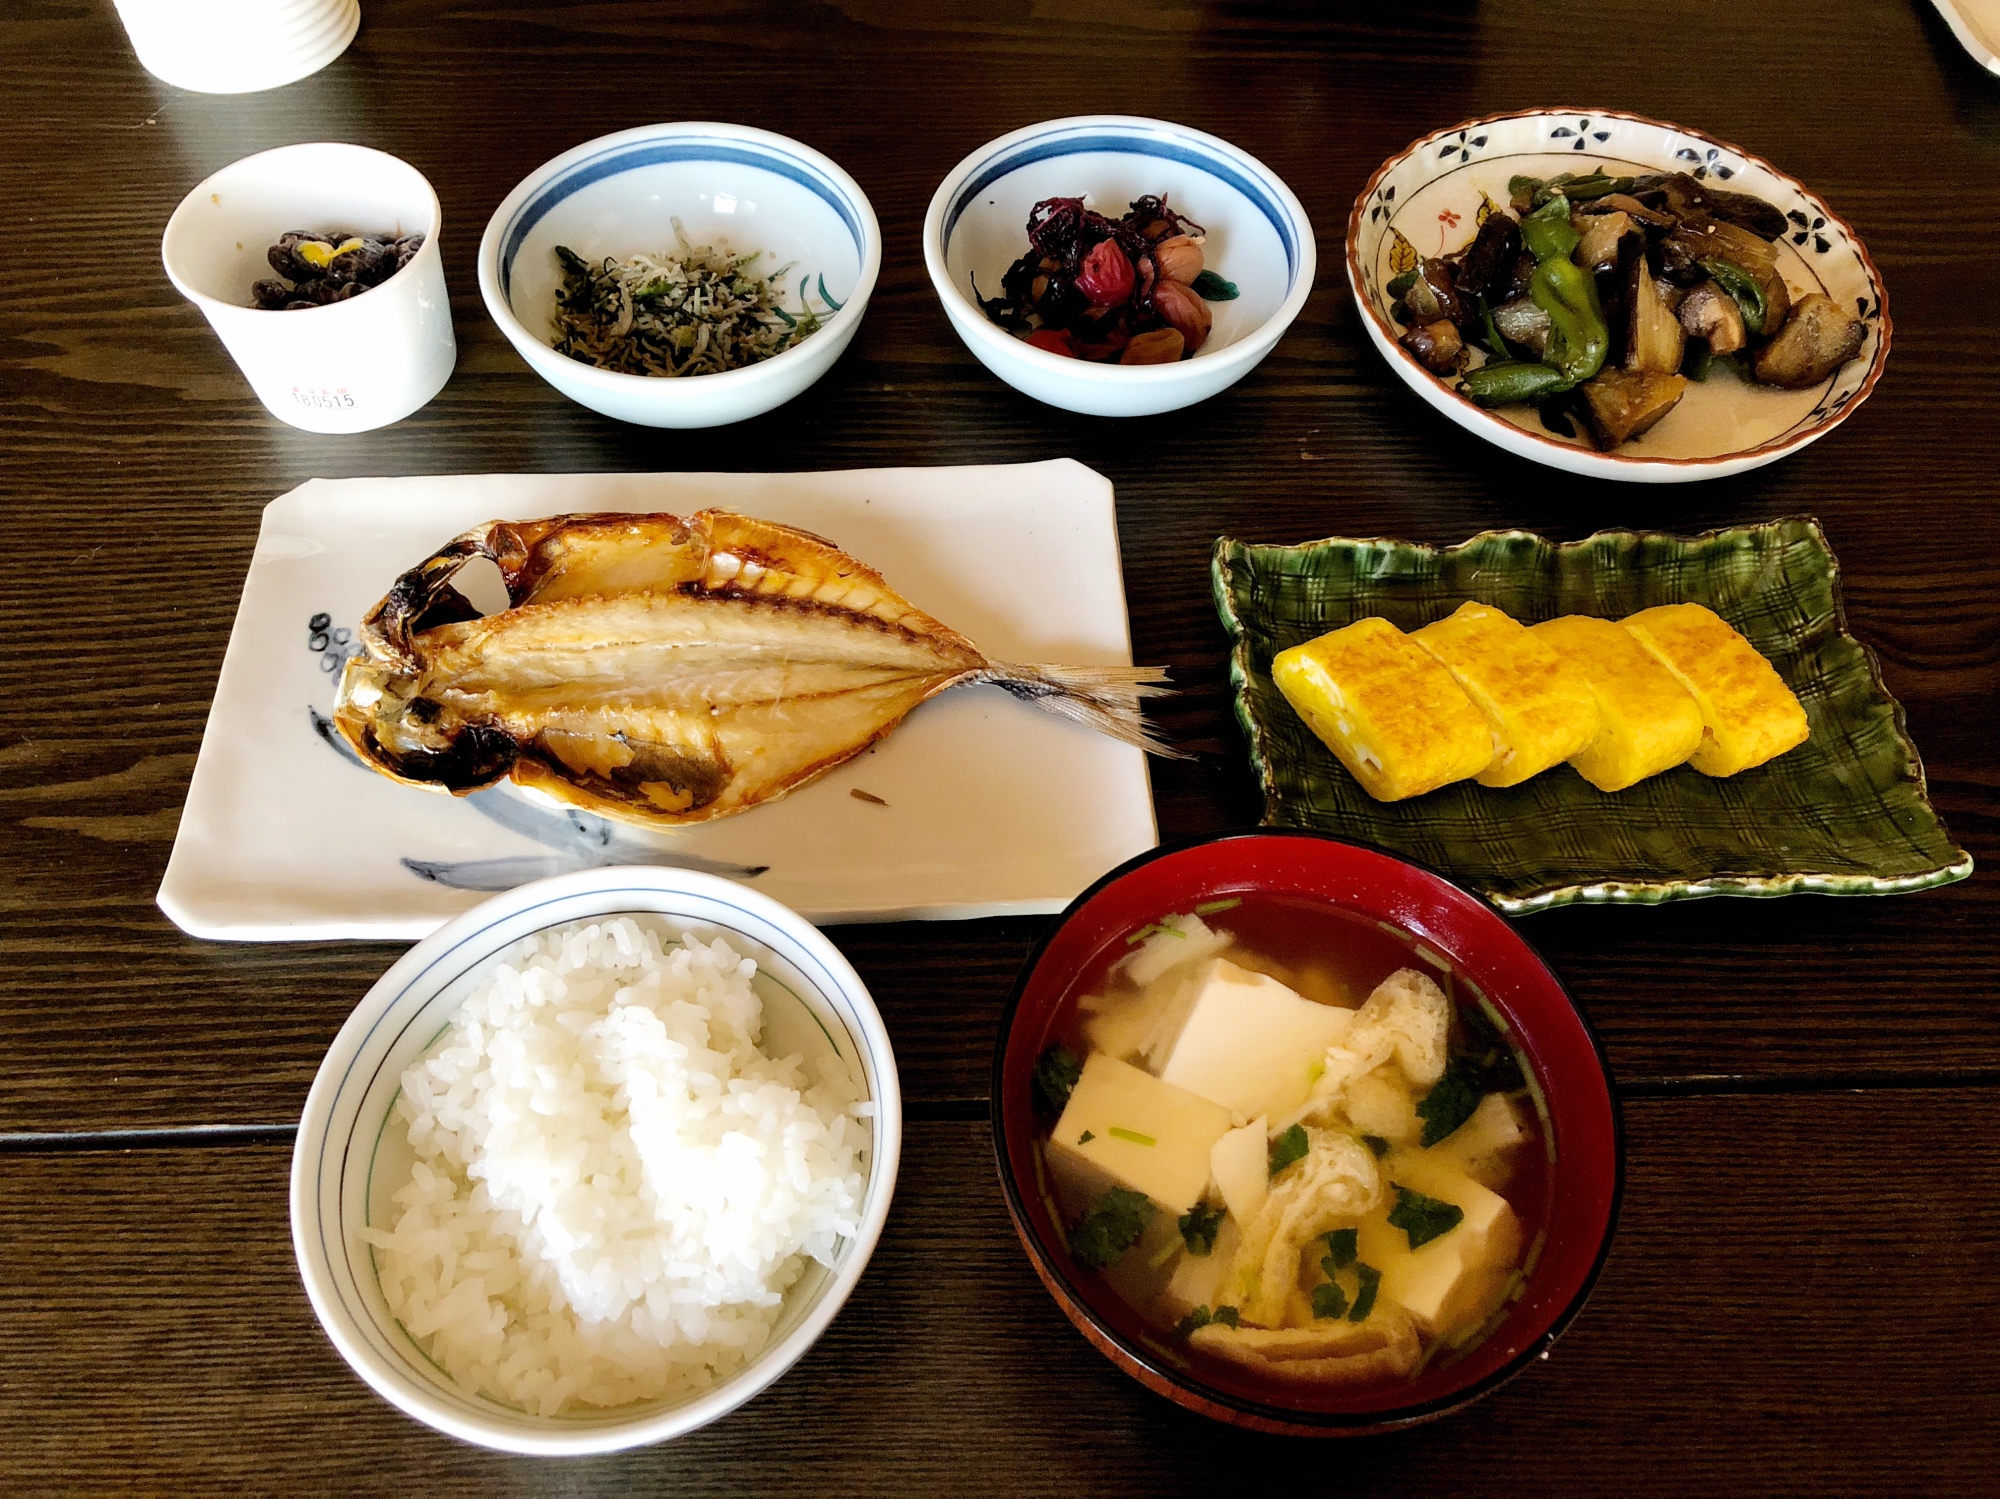 Reichhaltig und gesund: Ein traditionelles Frühstück in Japan.